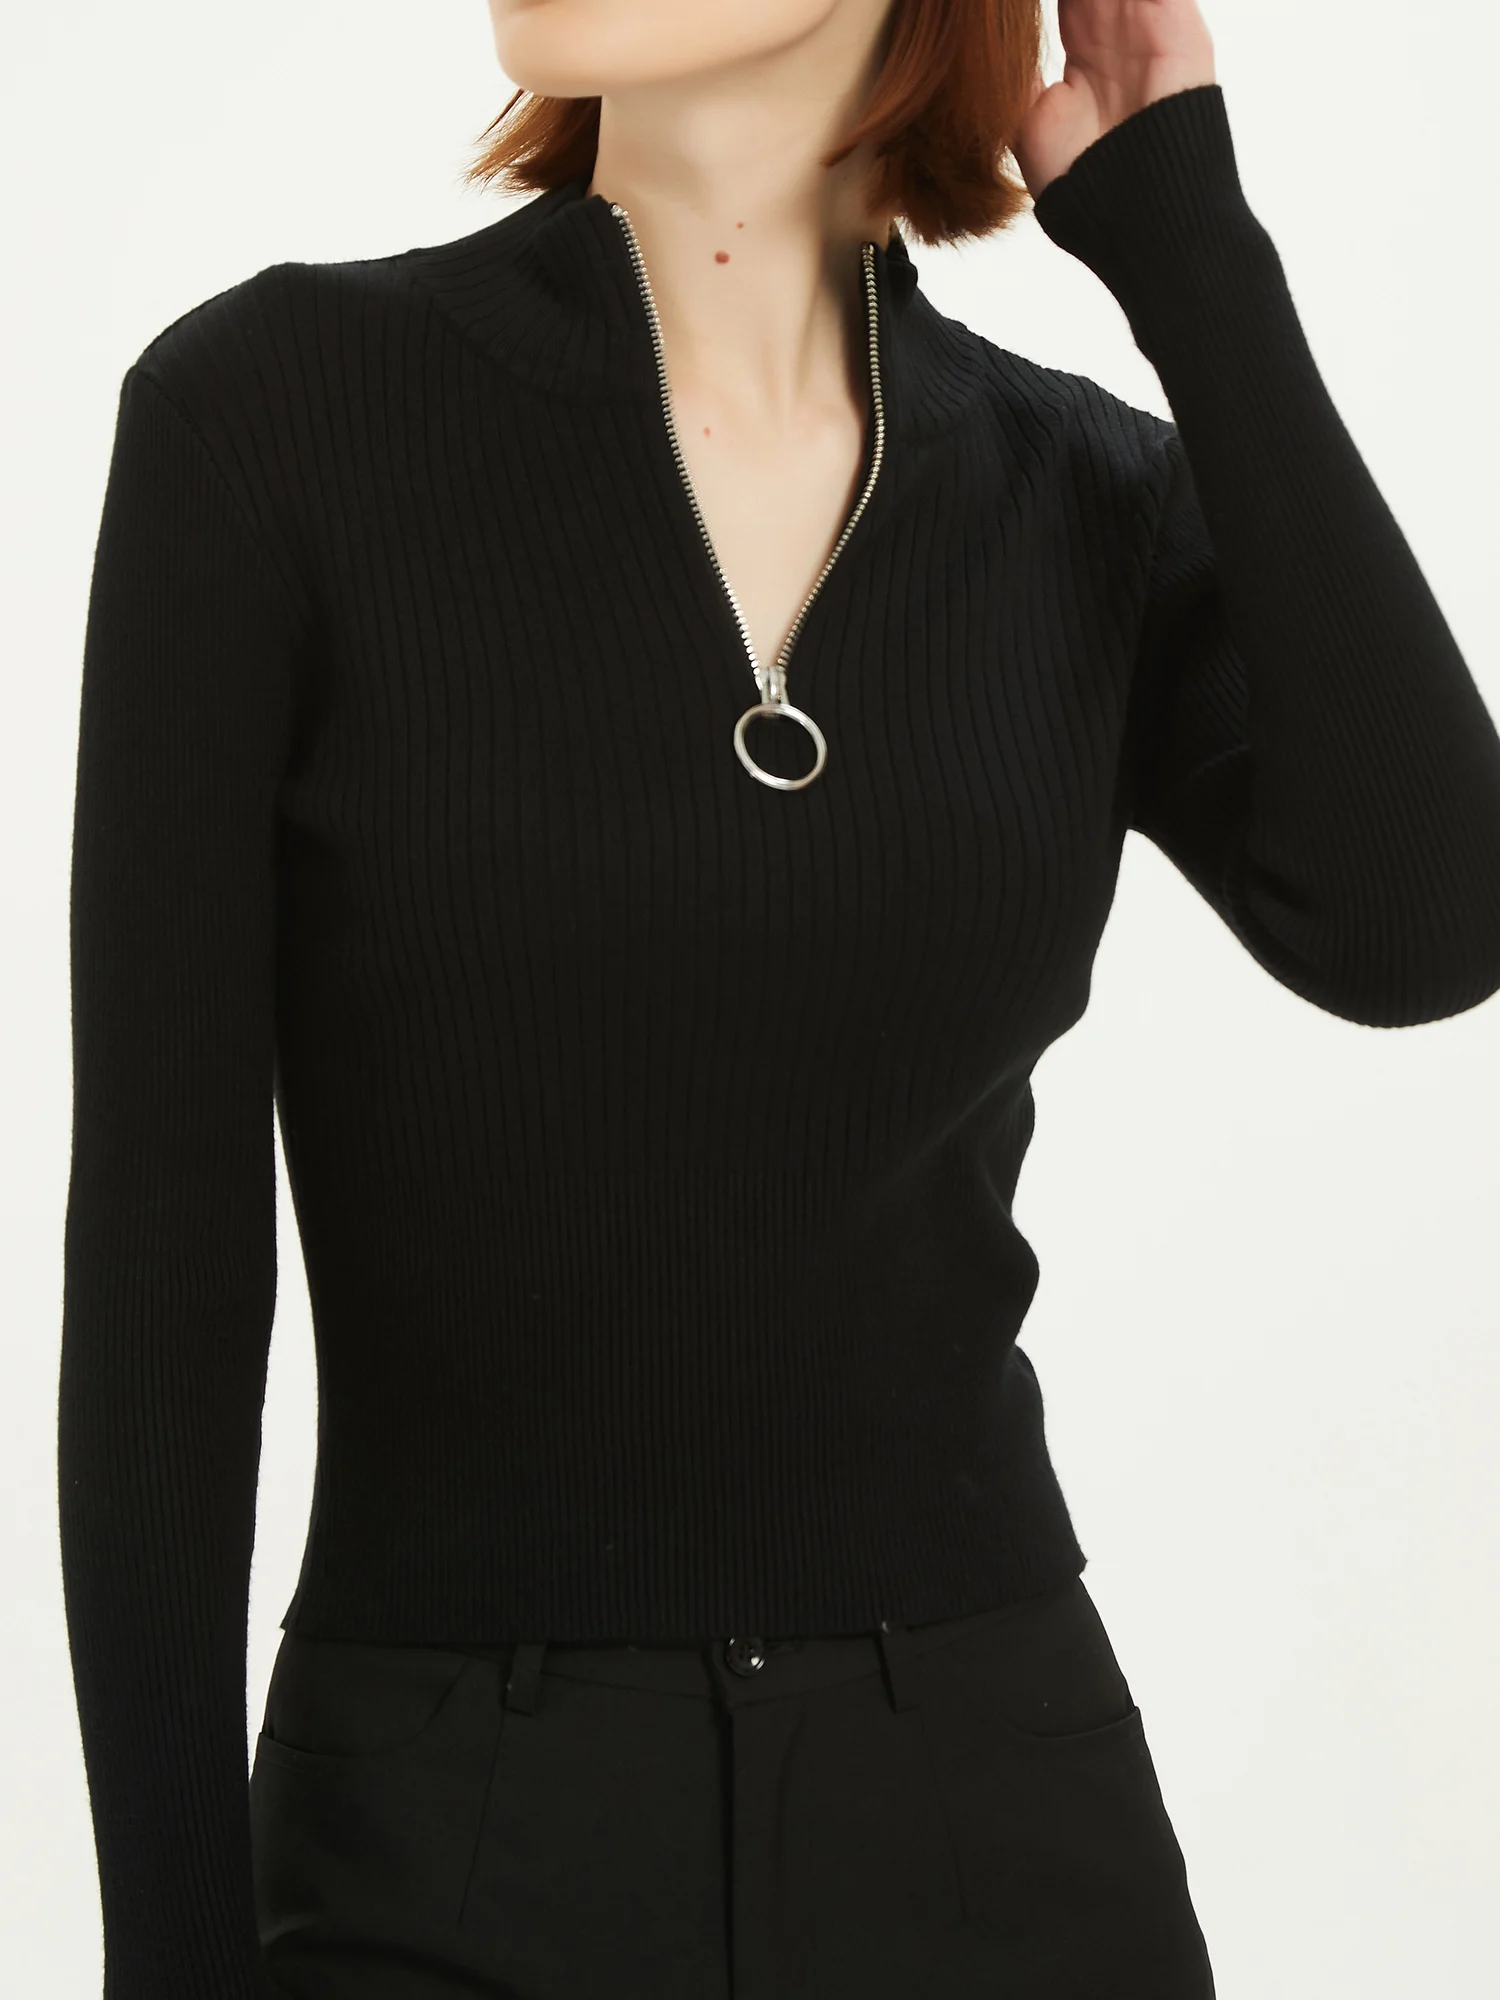 Кроп-топ на молнии женский свитер с ложным воротником вязаный пуловер в рубчик